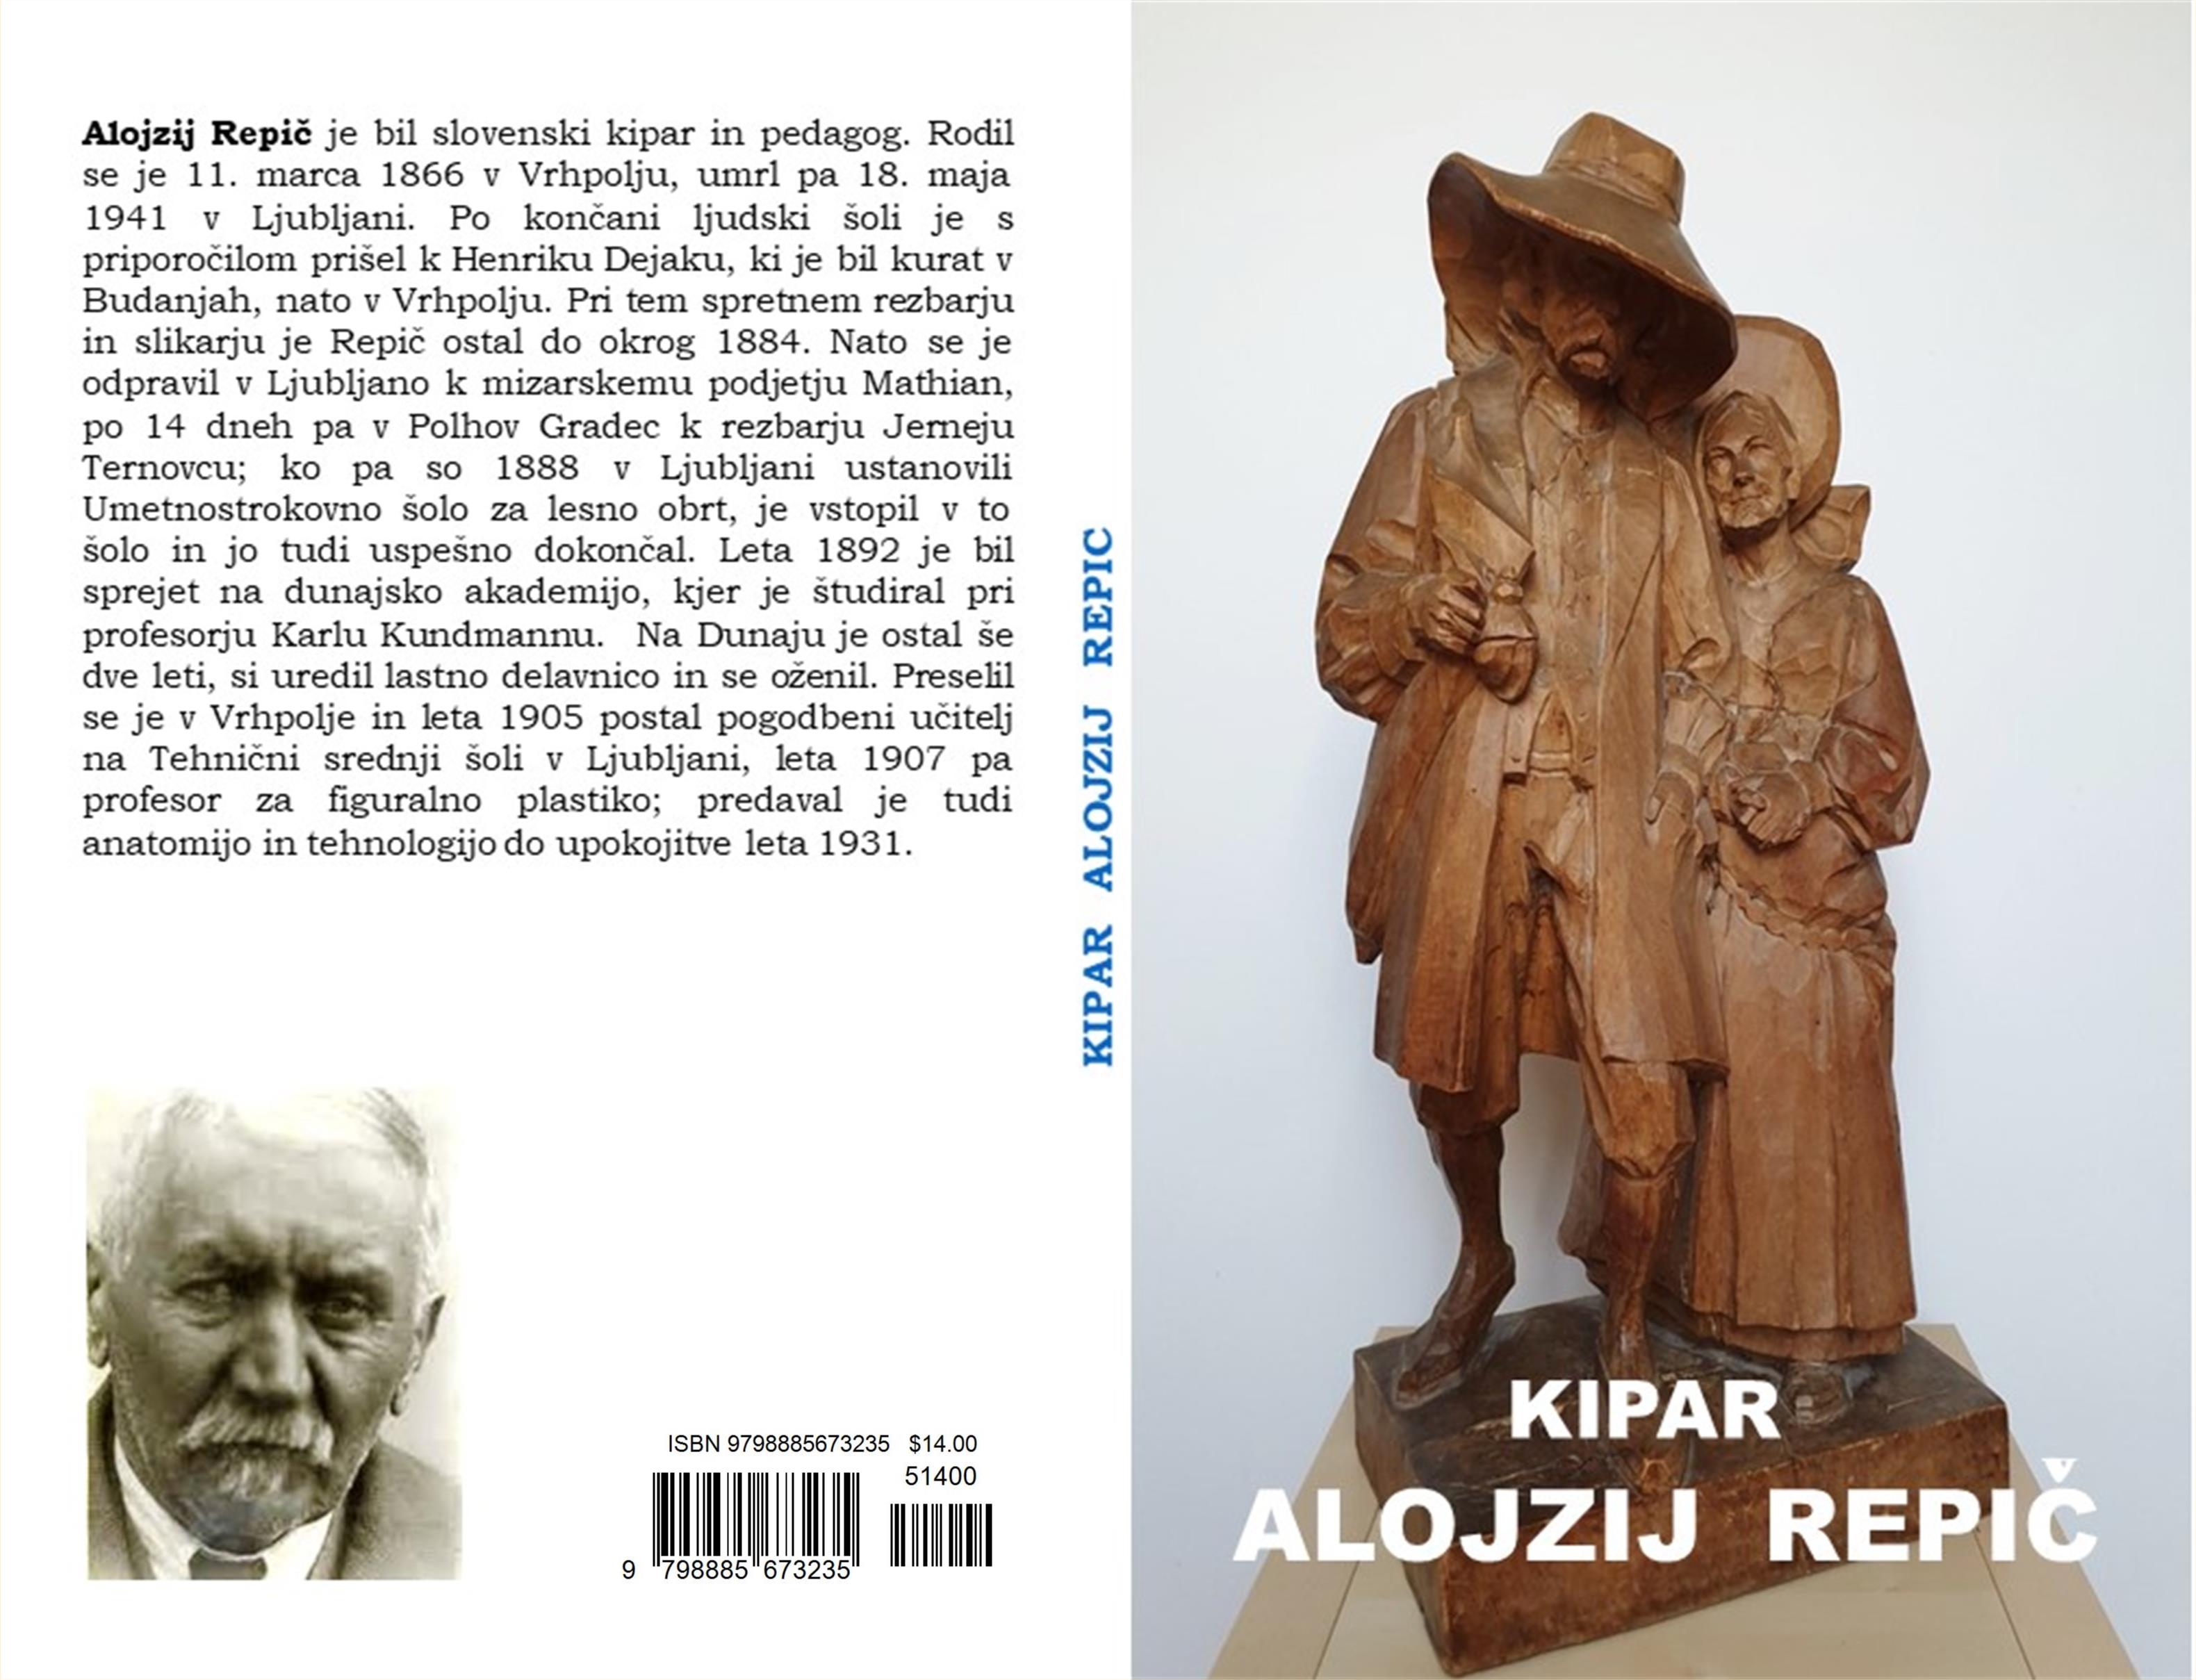 Kipar Alojzij Repič cover image